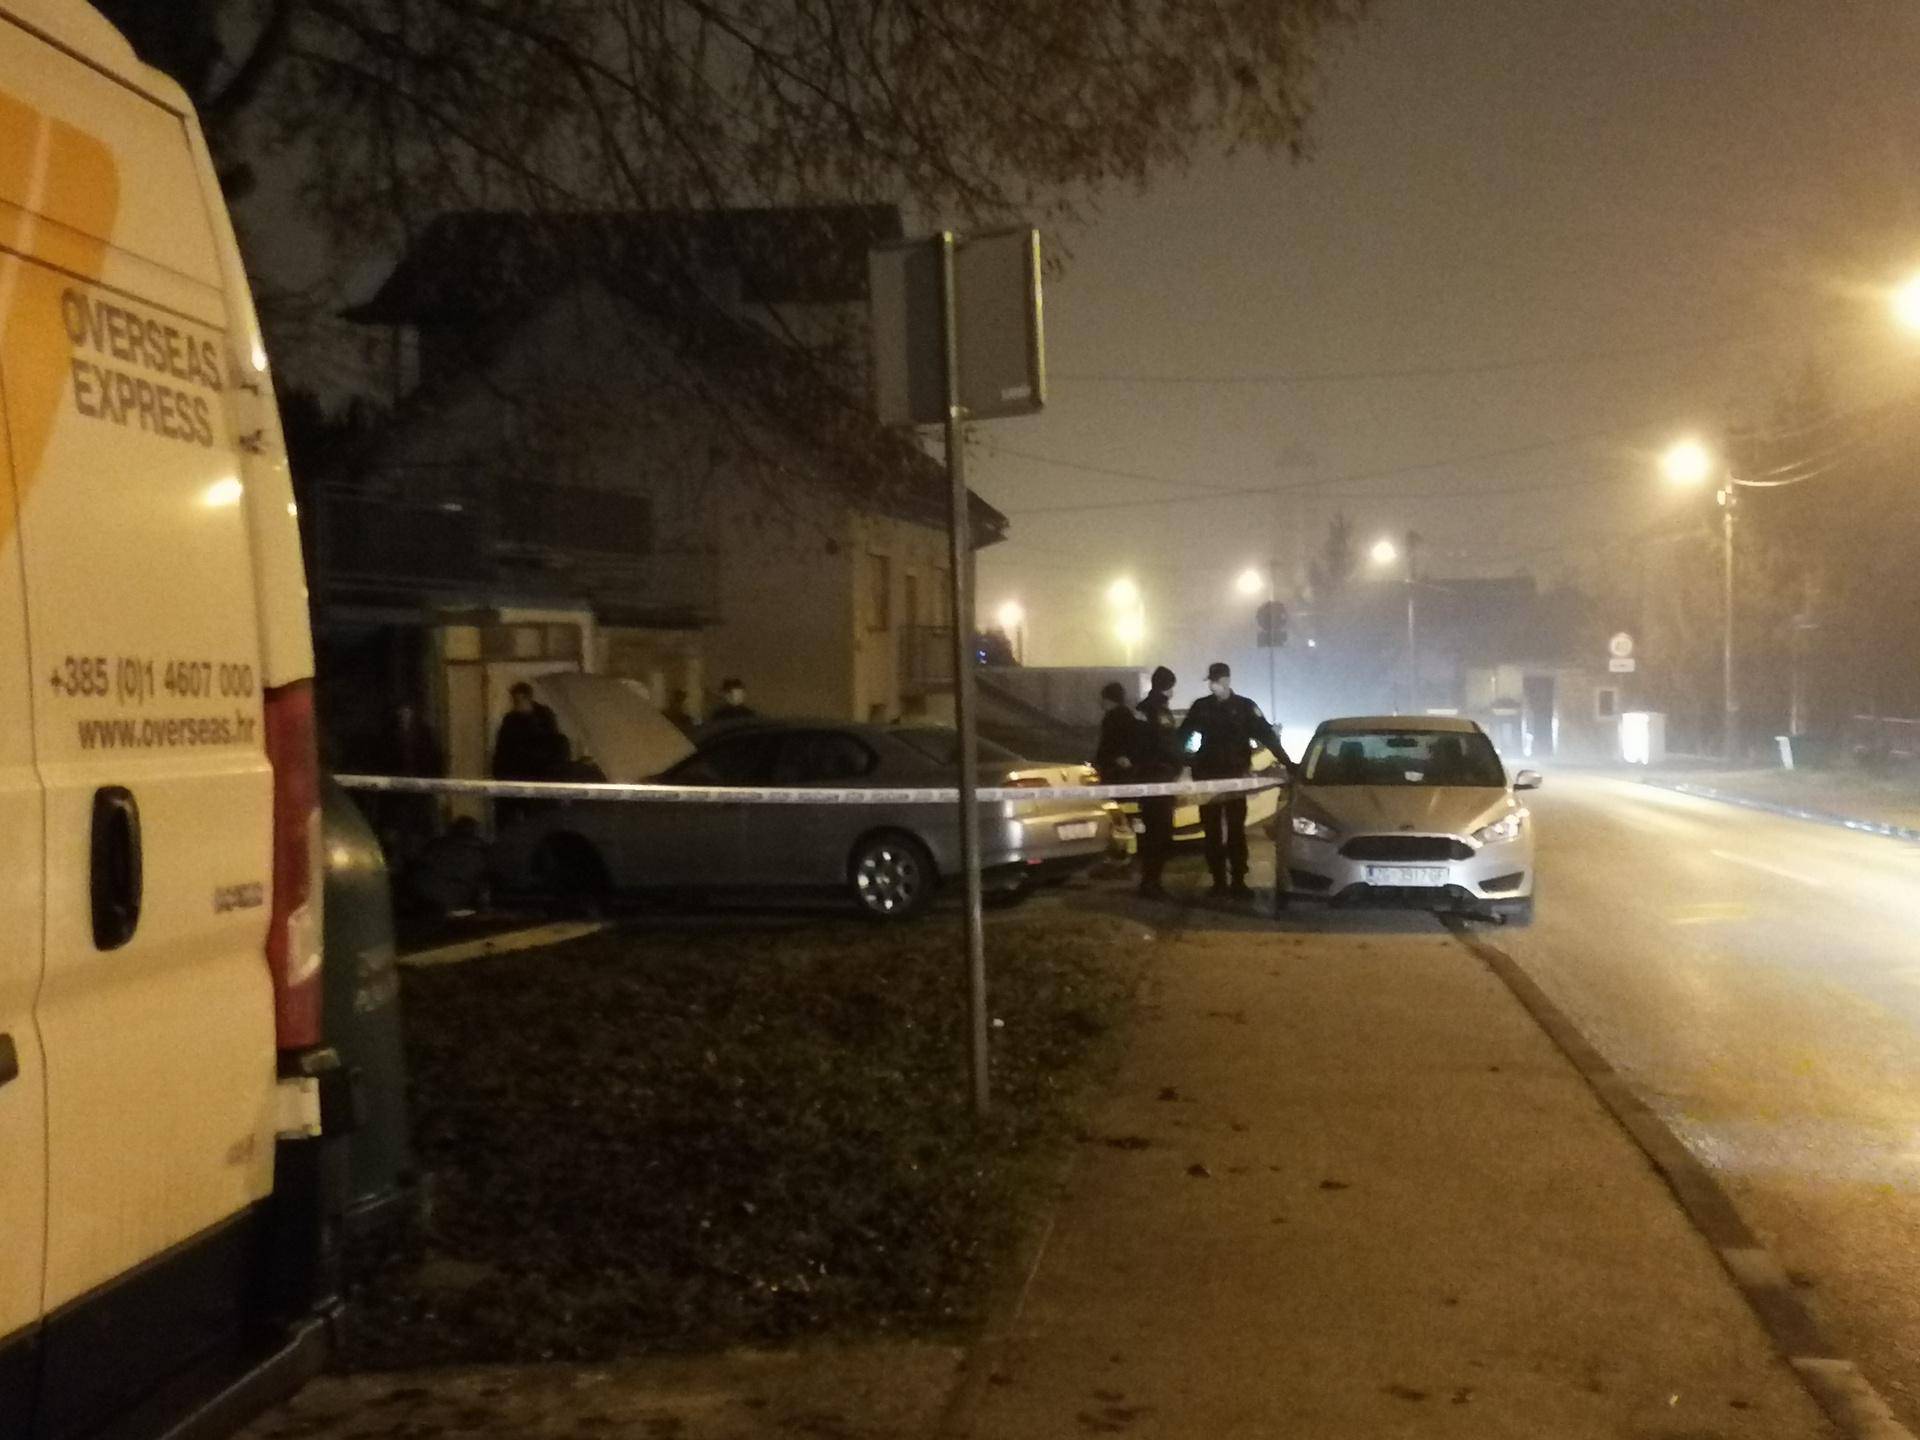 Muškarac poginuo pod autom: Policija objavila detalje nesreće